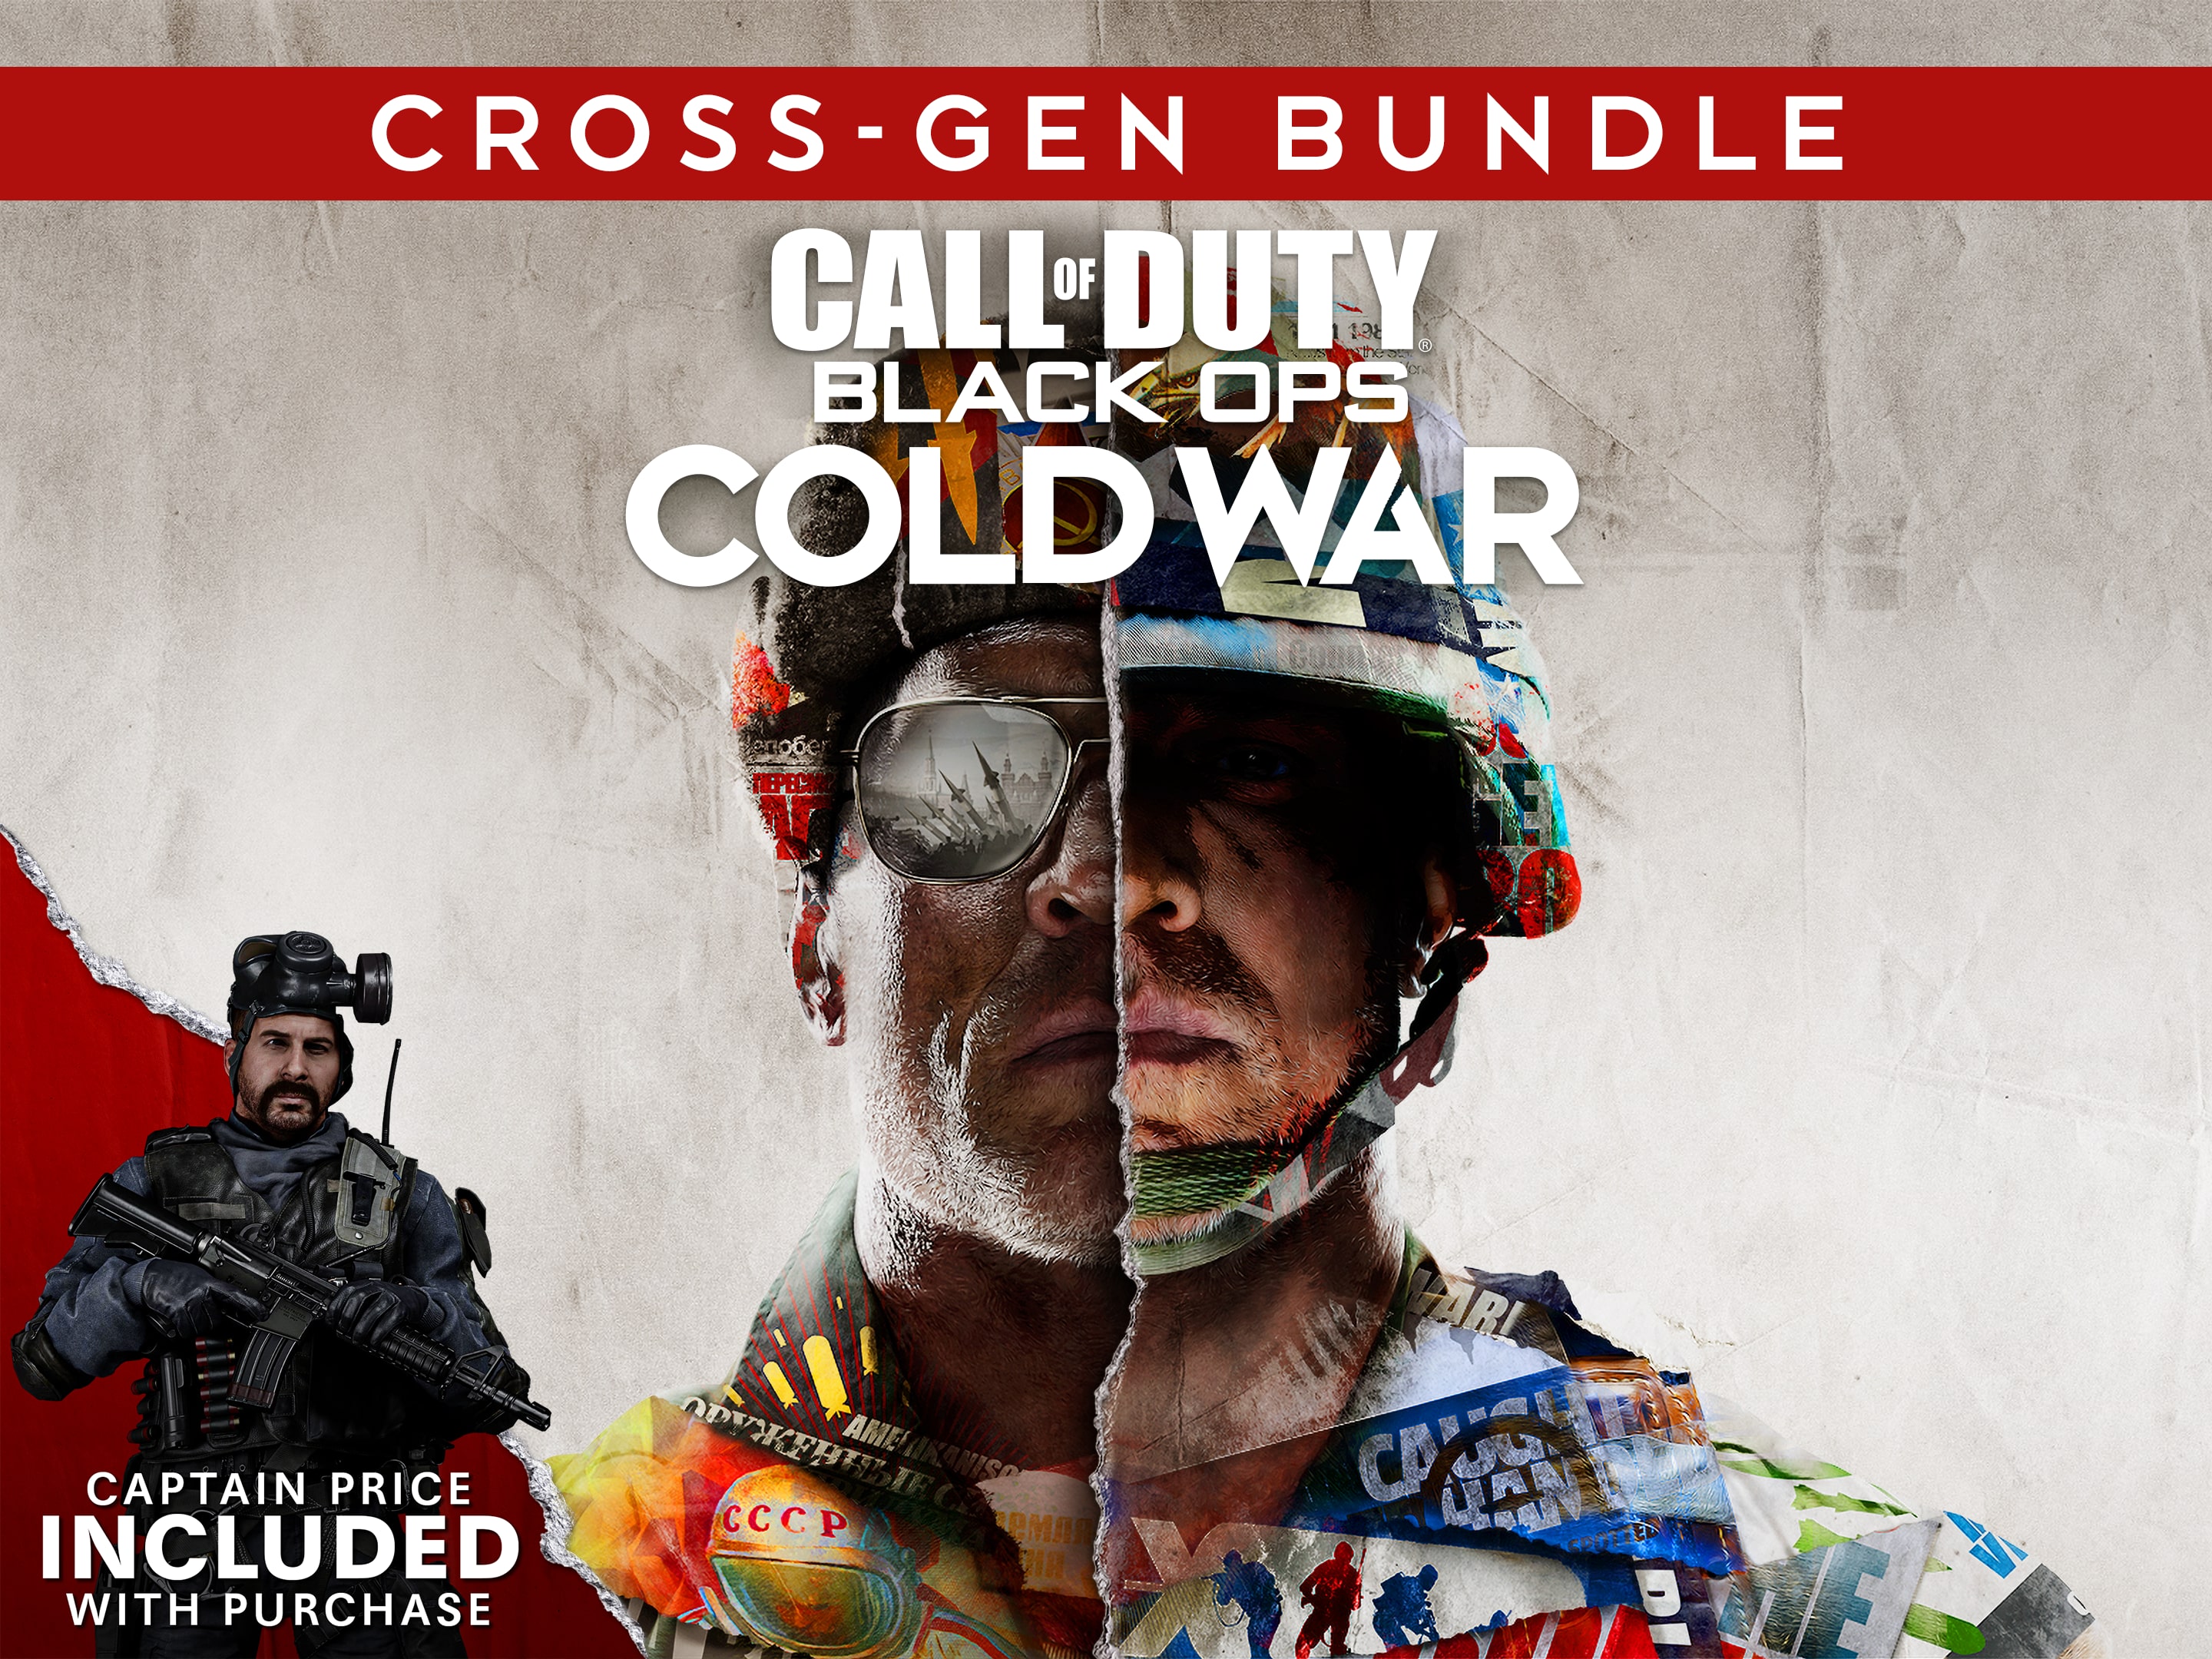 Call of Duty®: Black Ops Cold War - Crossgen-Bundle PS4™ & PS5™